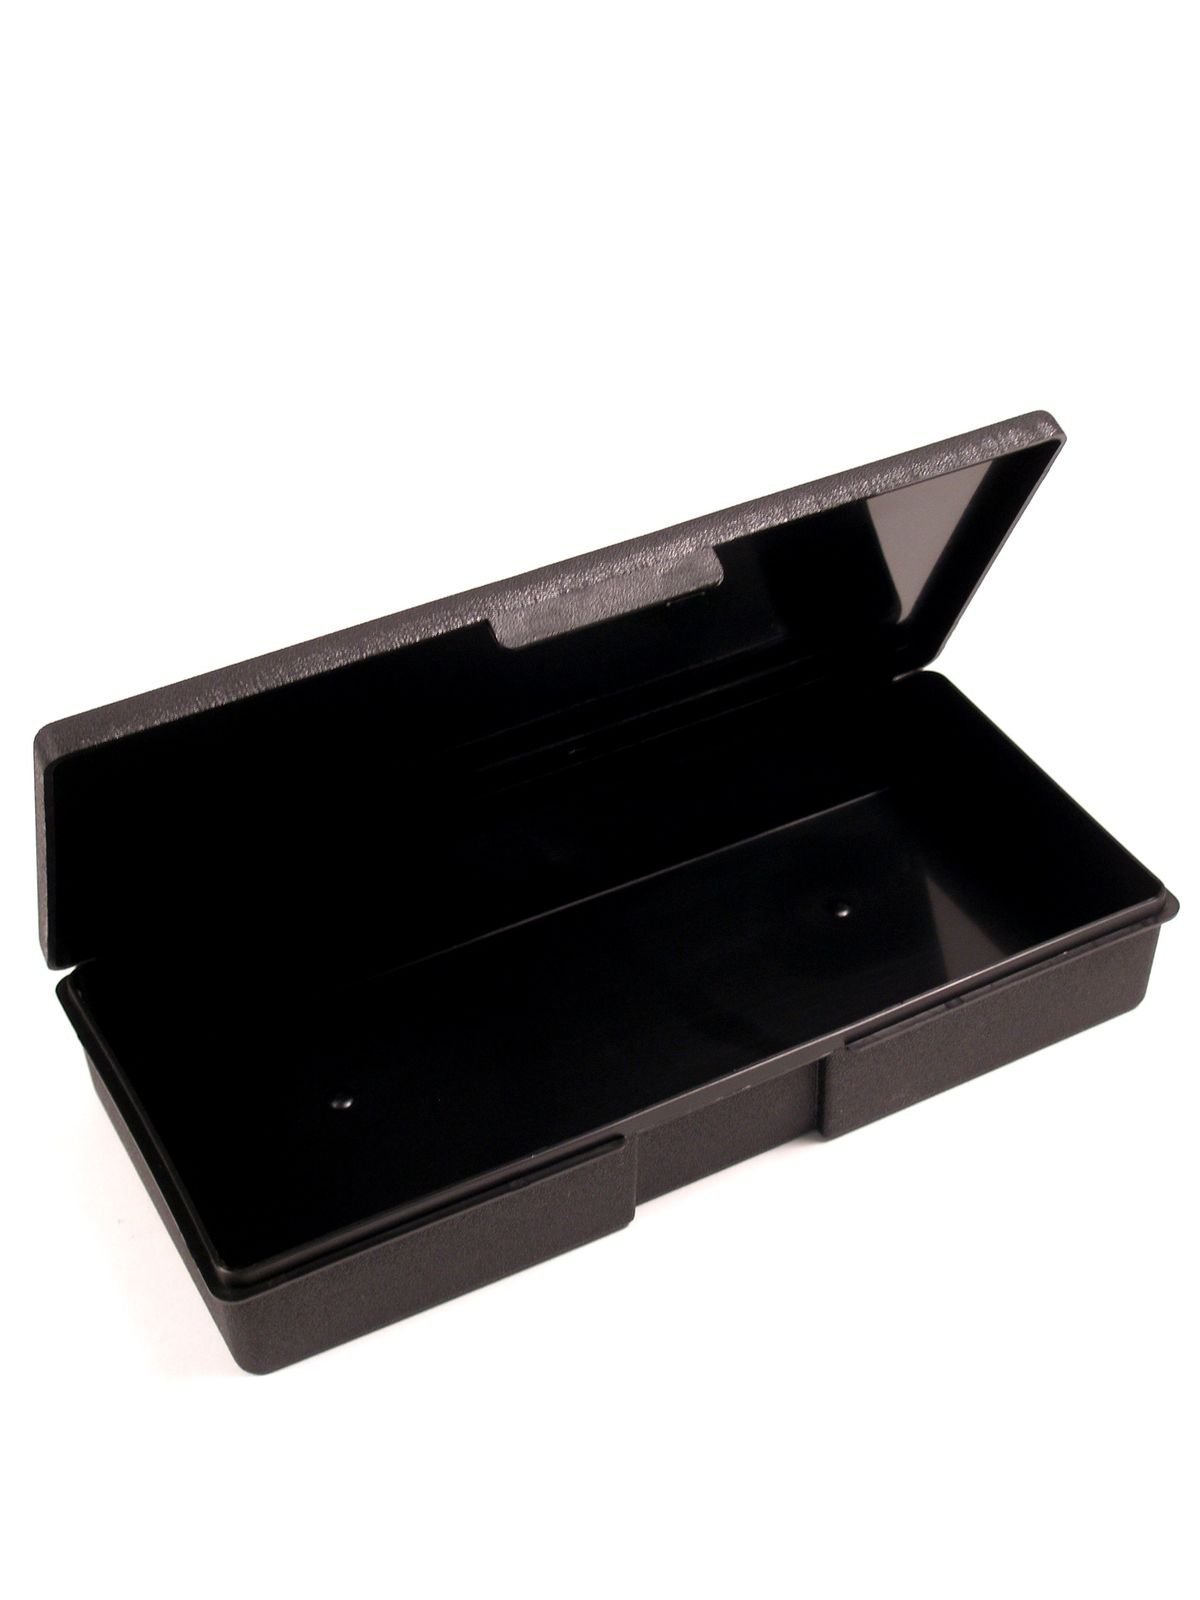 ArtBin - Pencil and Marker Storage Box